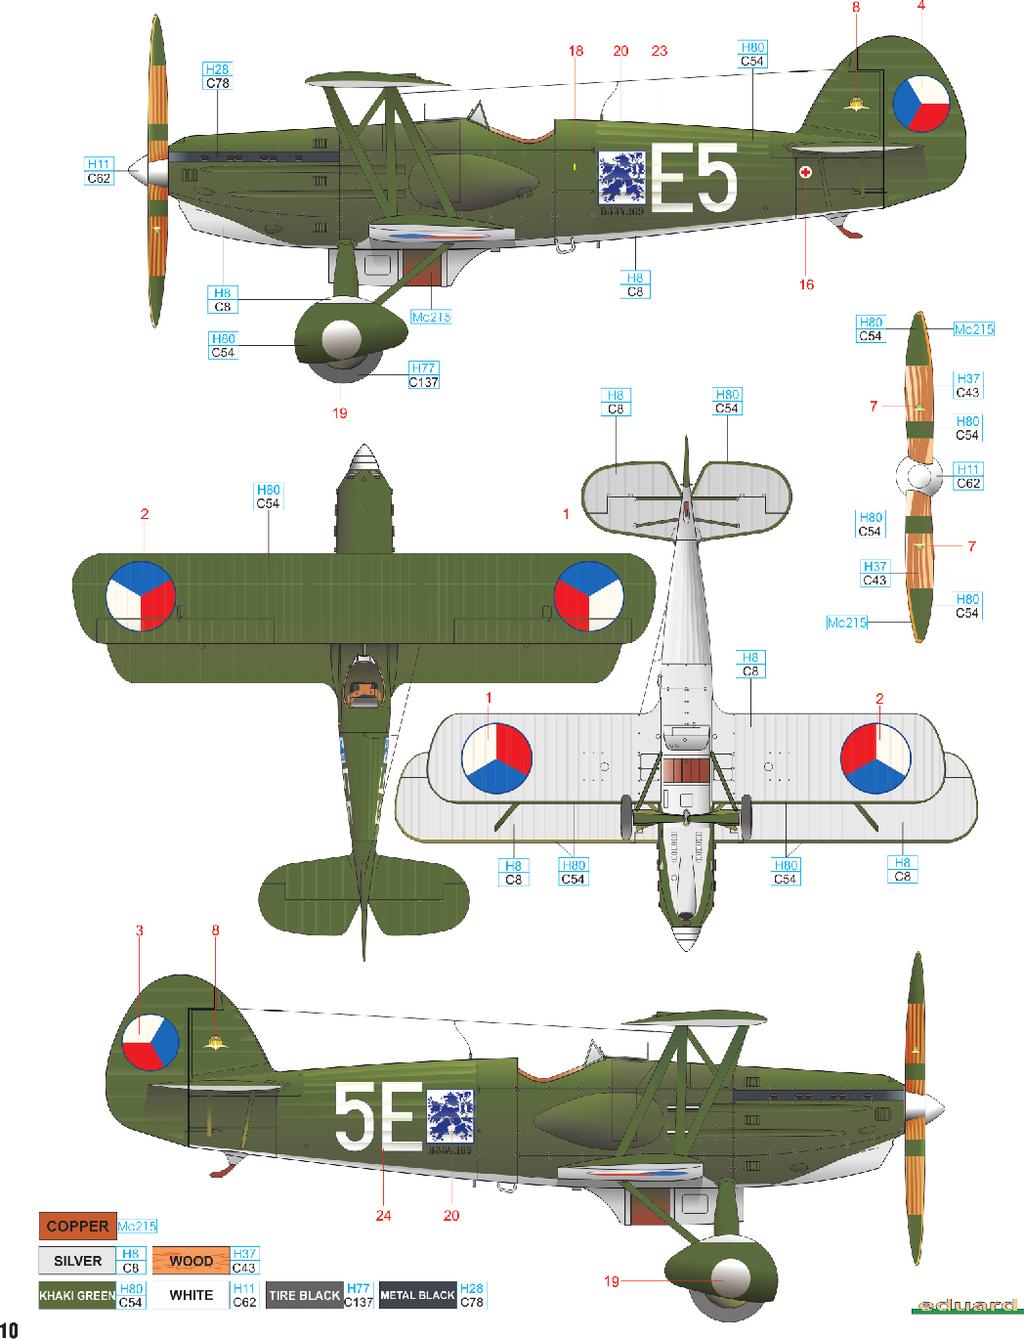 A v. č. 169, 40. stíhací letka, Letecký pluk 4, Hradec Králové, srpen 1937 Avia B.534 výrobního čísla 169 byla poprvé zalétnuta 4. dubna 1937, od 22.